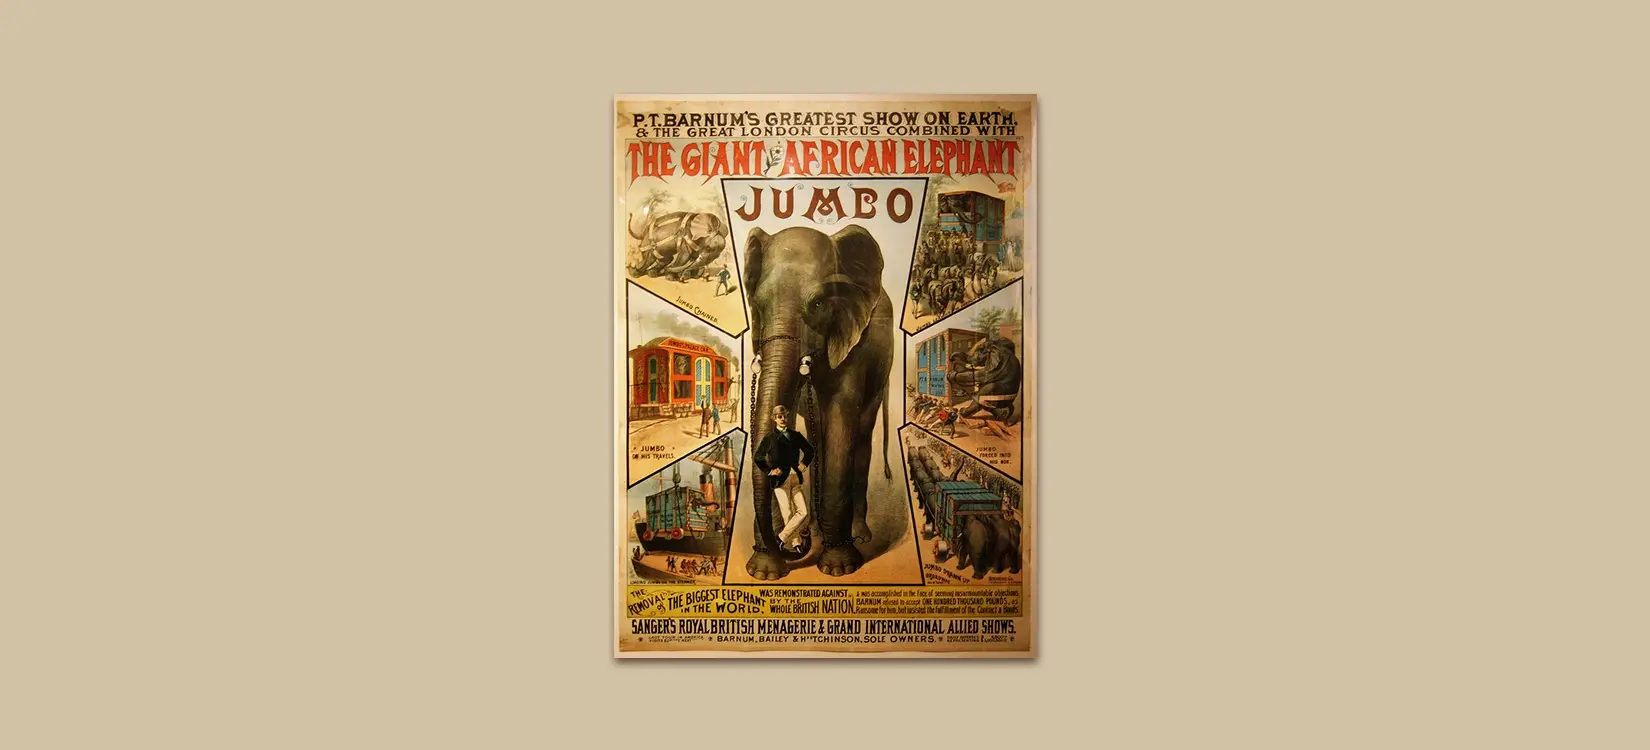 Poster Geschichte – Historische Fakten rund um das Plakat